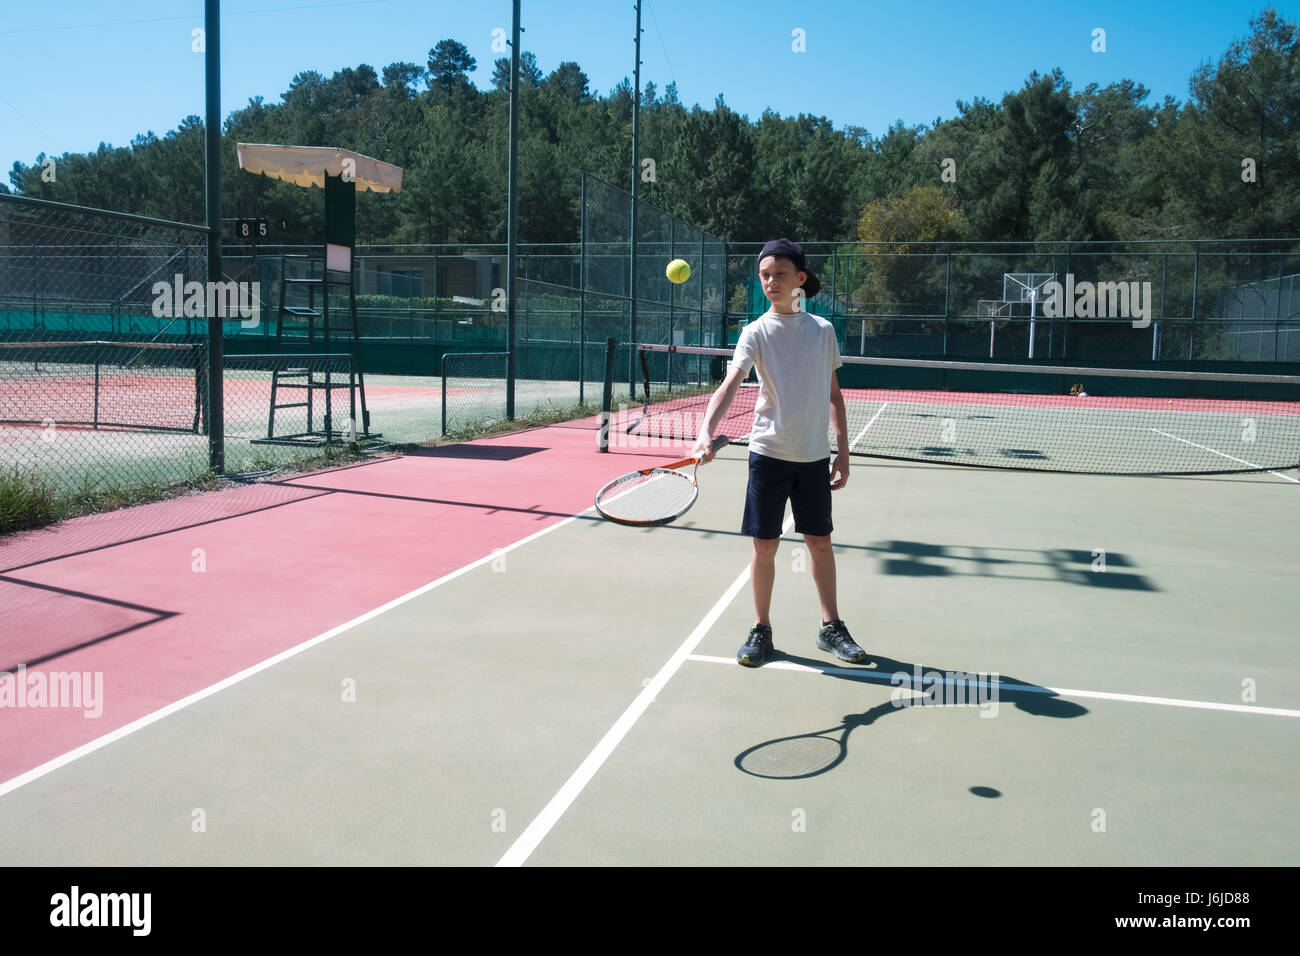 Garçon avec la raquette sur un court de tennis. Journée ensoleillée en été Banque D'Images